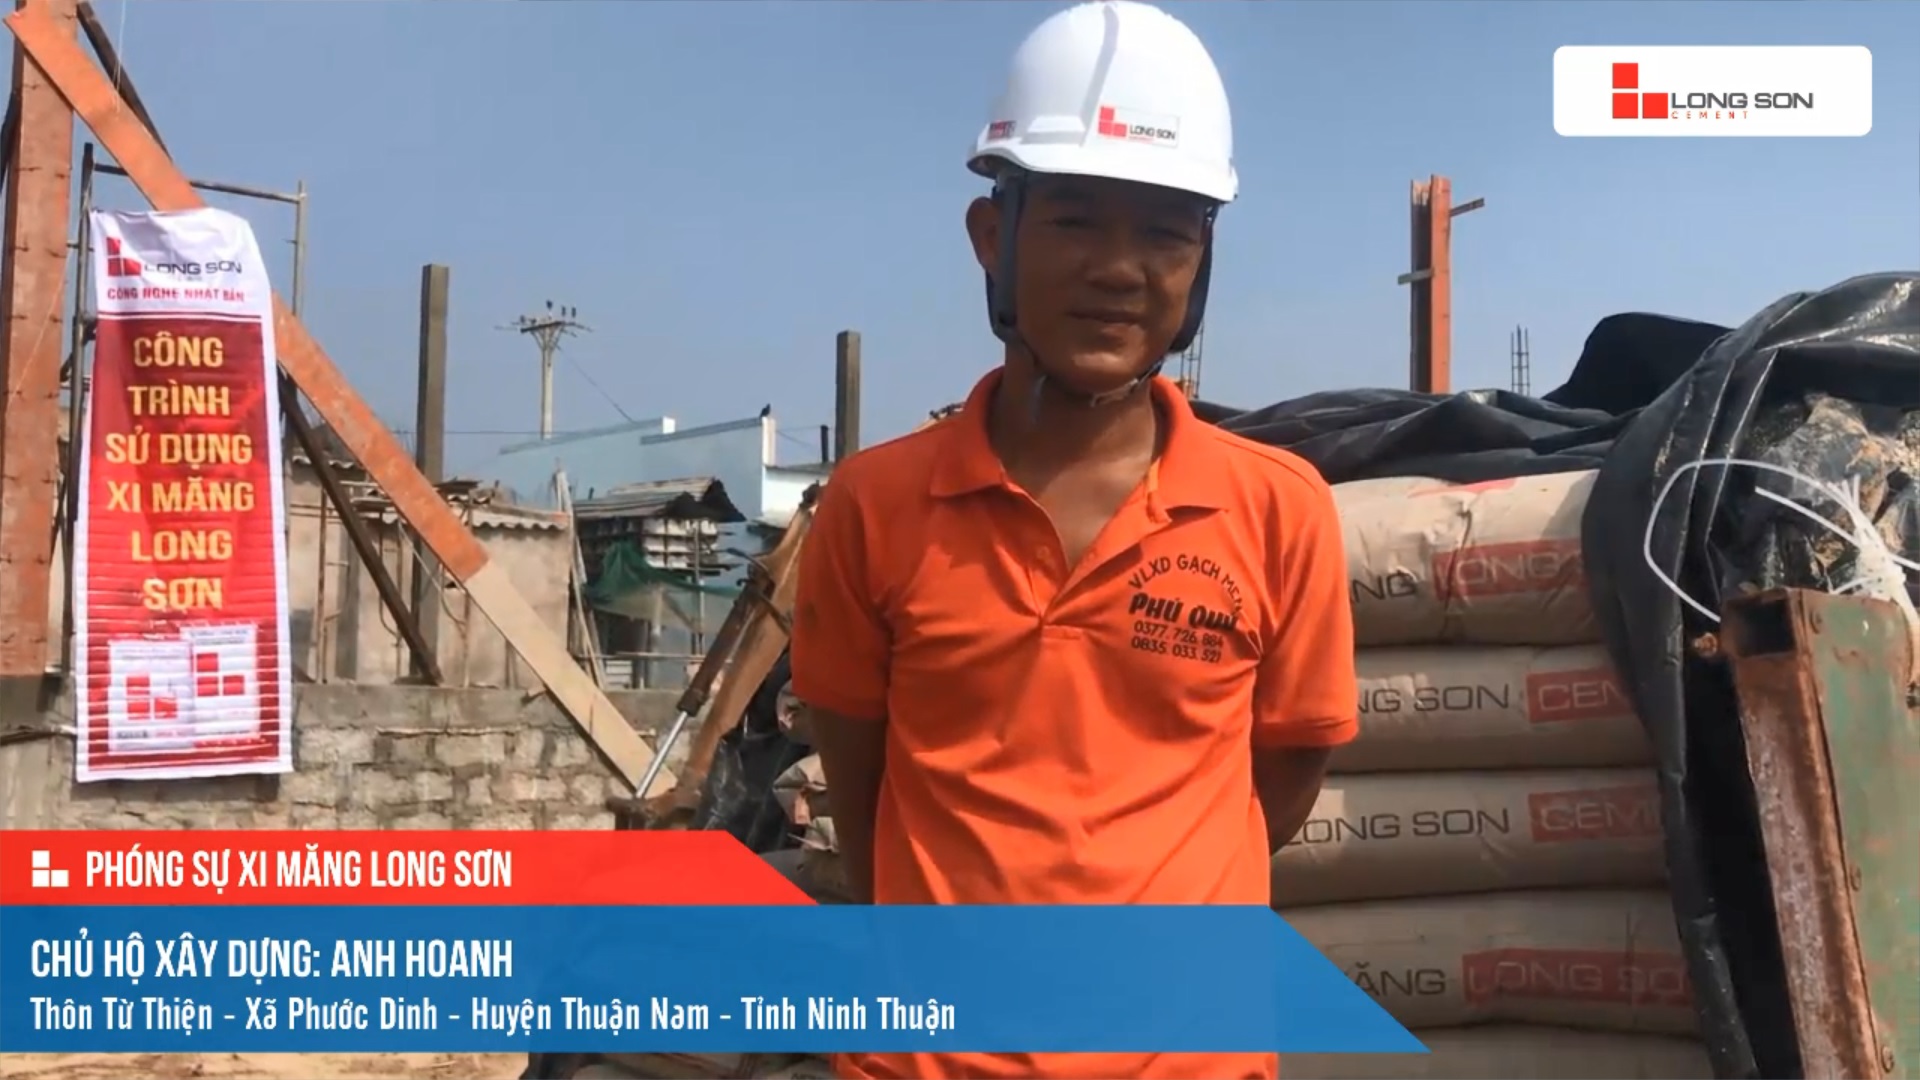 Phóng sự công trình sử dụng Xi măng Long Sơn tại Ninh Thuận 21.04.2021